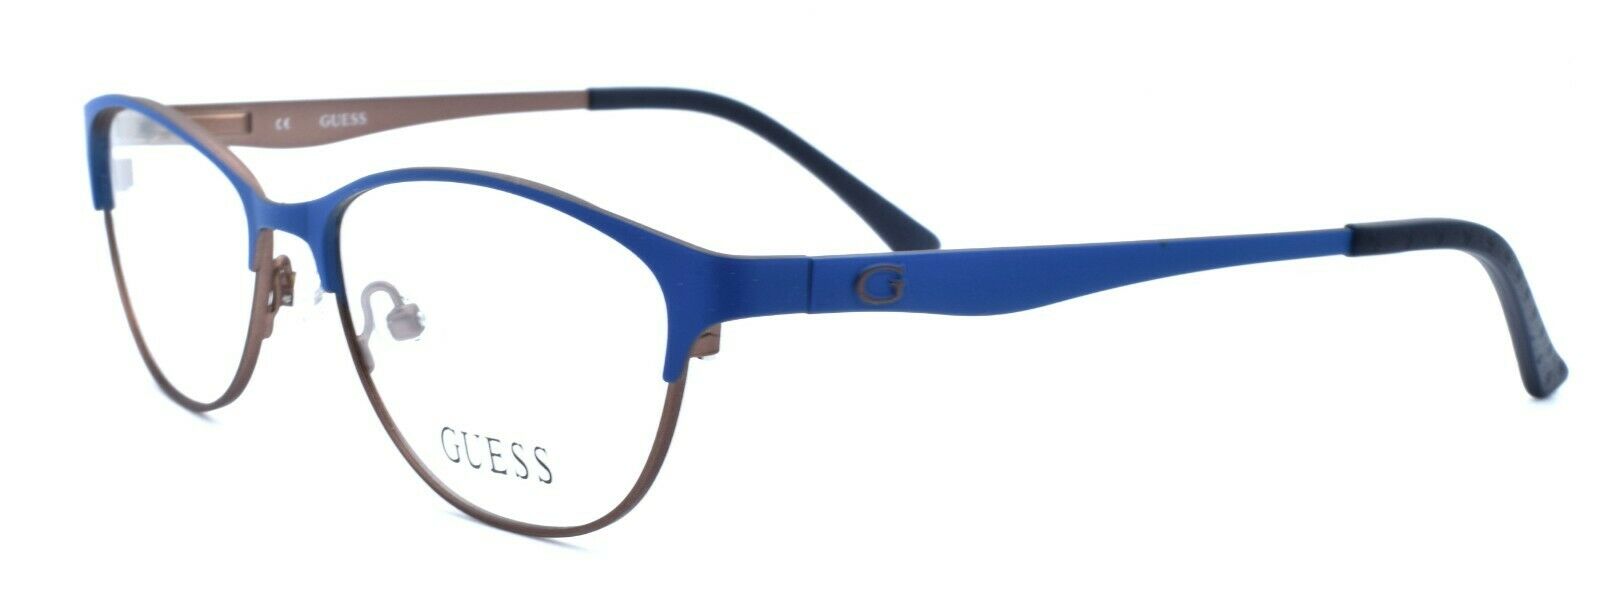 1-GUESS GU2504 091 Women's Eyeglasses Frames 53-15-135 Matte Blue / Brown-664689697649-IKSpecs